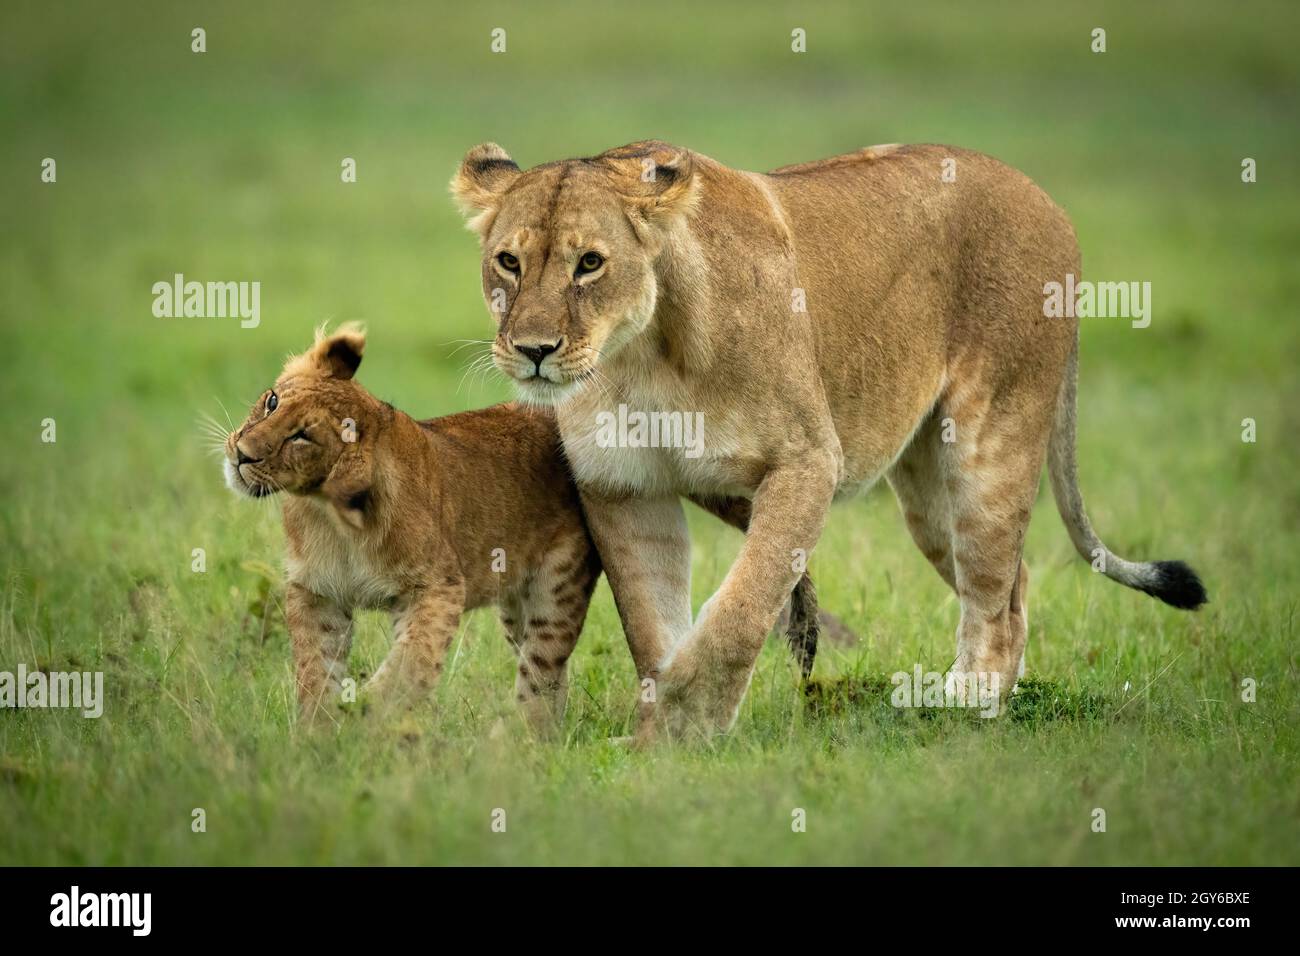 El cachorro de león camina con la leona sacudiendo la cabeza Foto de stock